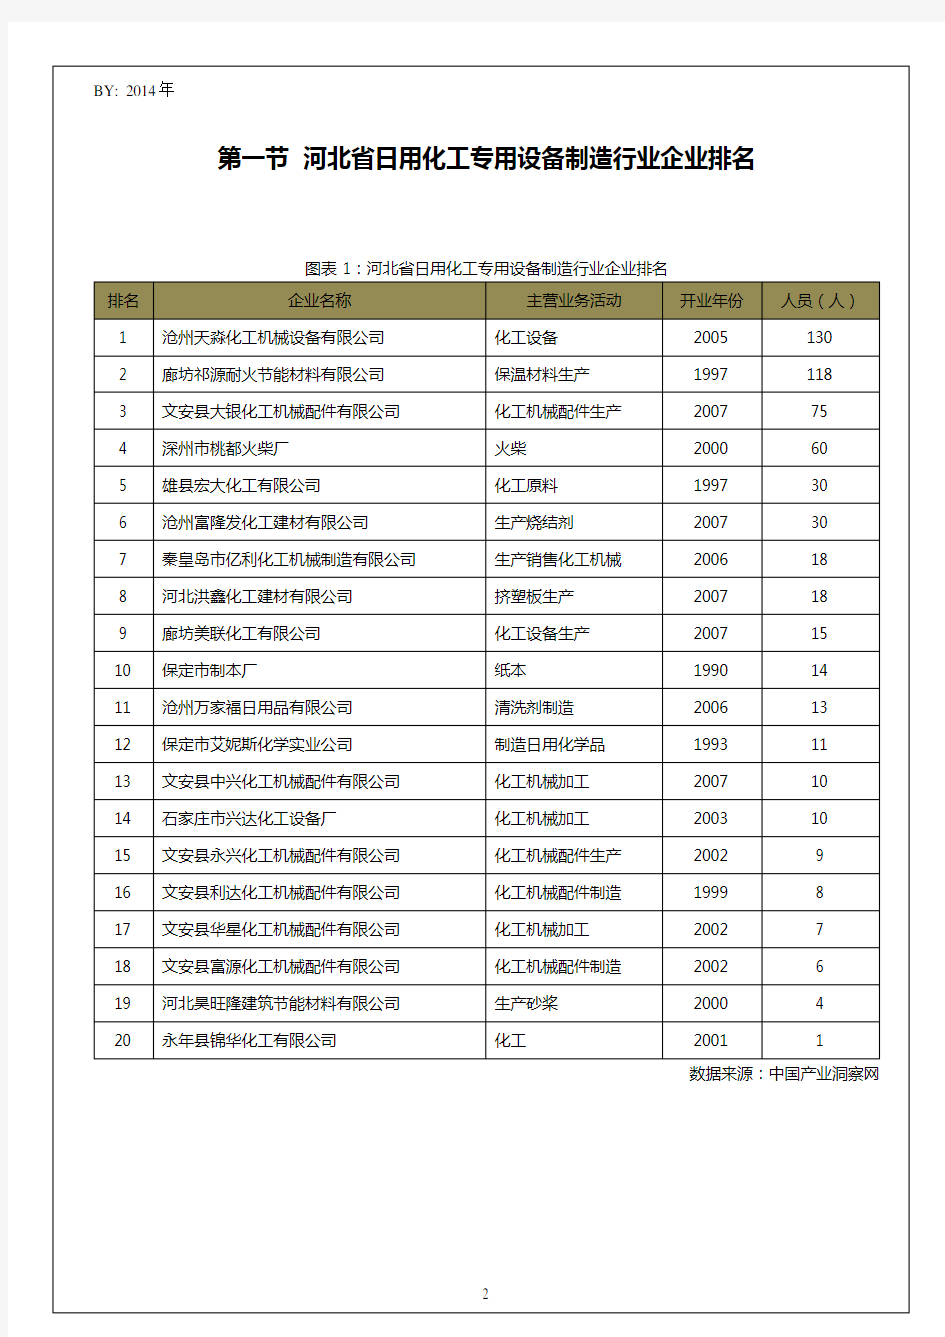 河北省日用化工专用设备制造行业企业排名统计报告